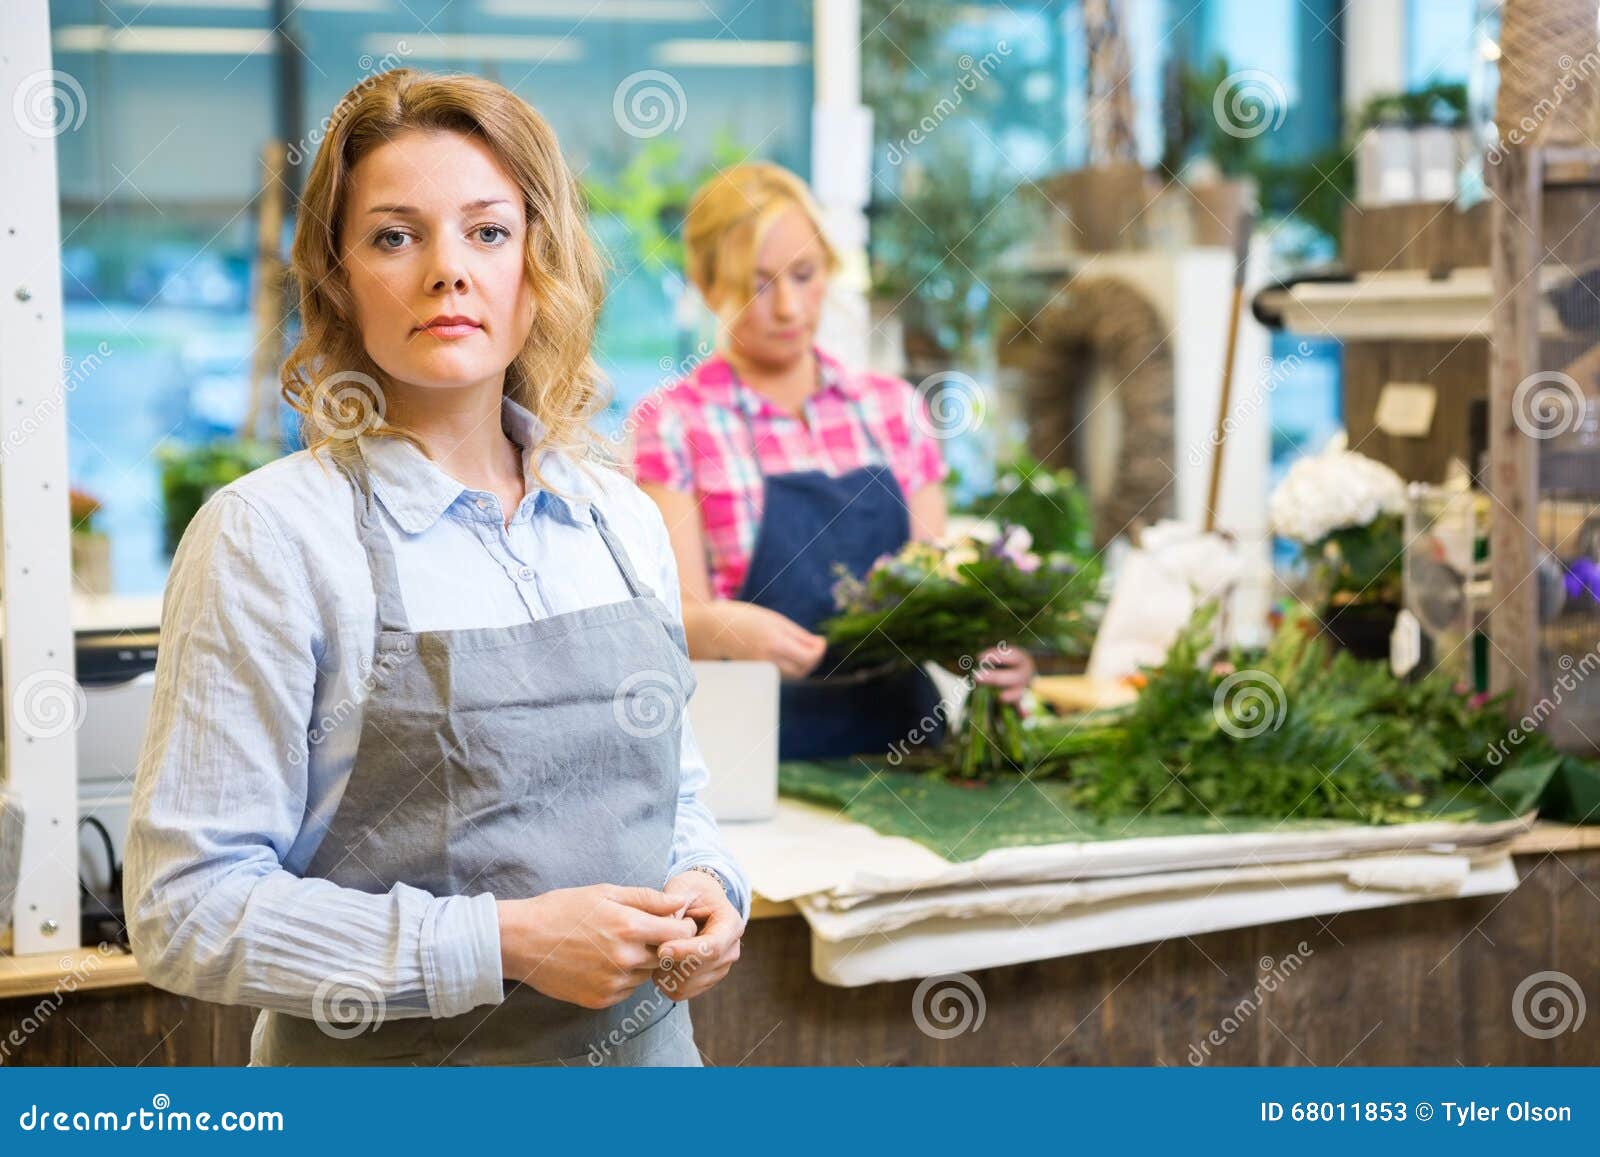 Stående av den säkra kvinnliga blomsterhandlaren In Shop. Stående av den säkra kvinnliga blomsterhandlaren med kollegadanandebuketten i bakgrund